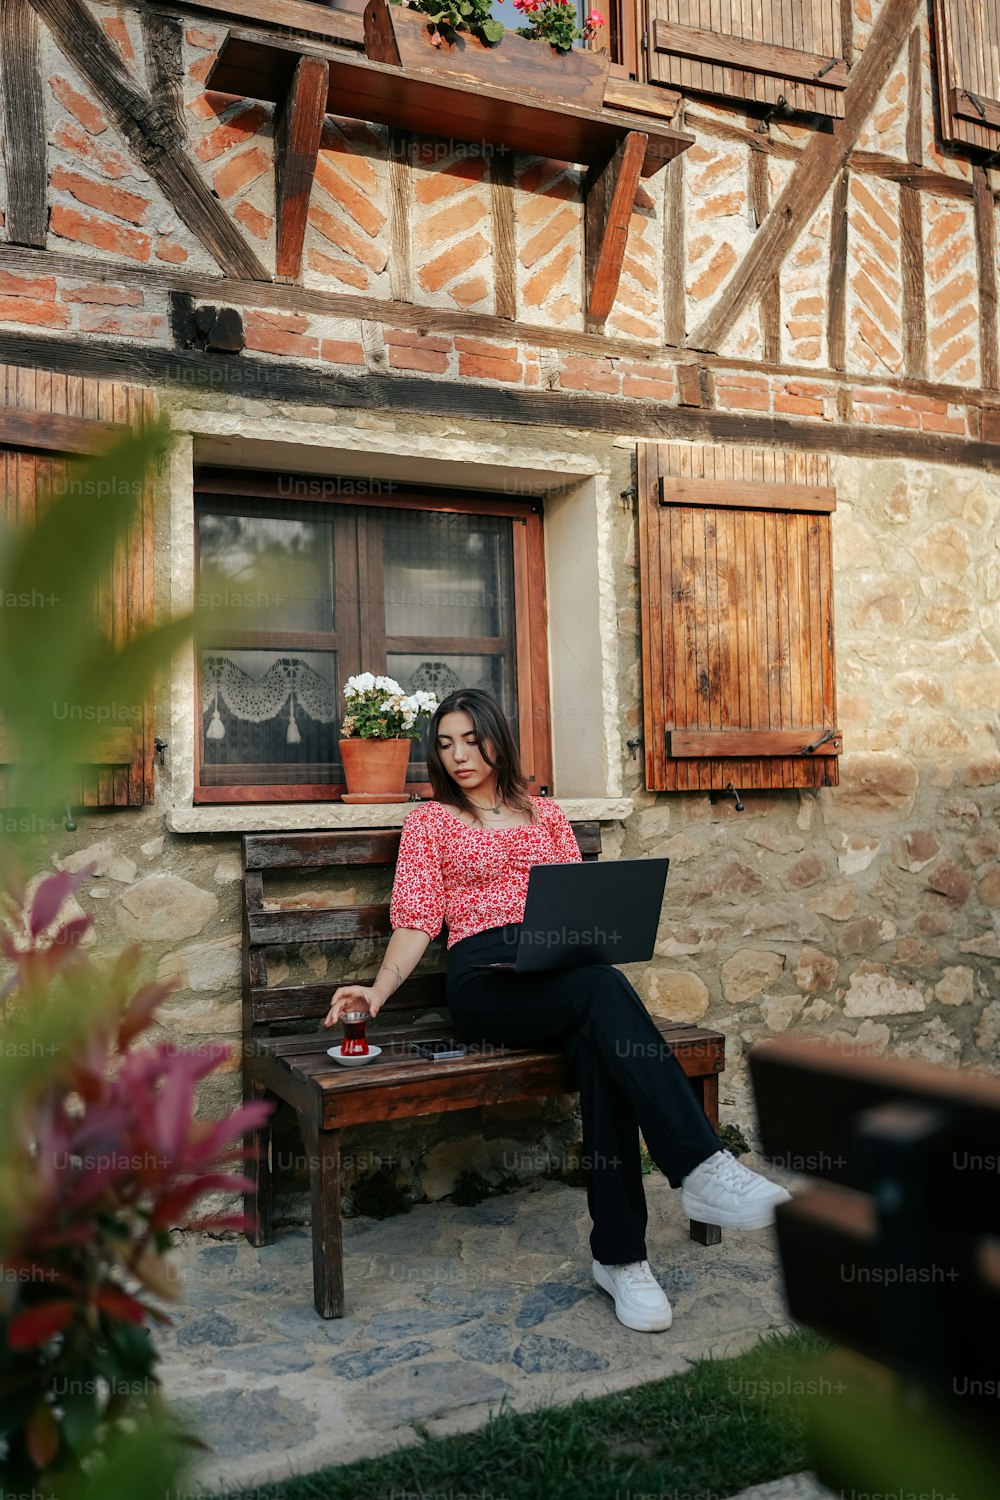 Eine Frau, die mit einem Laptop auf einer Bank sitzt